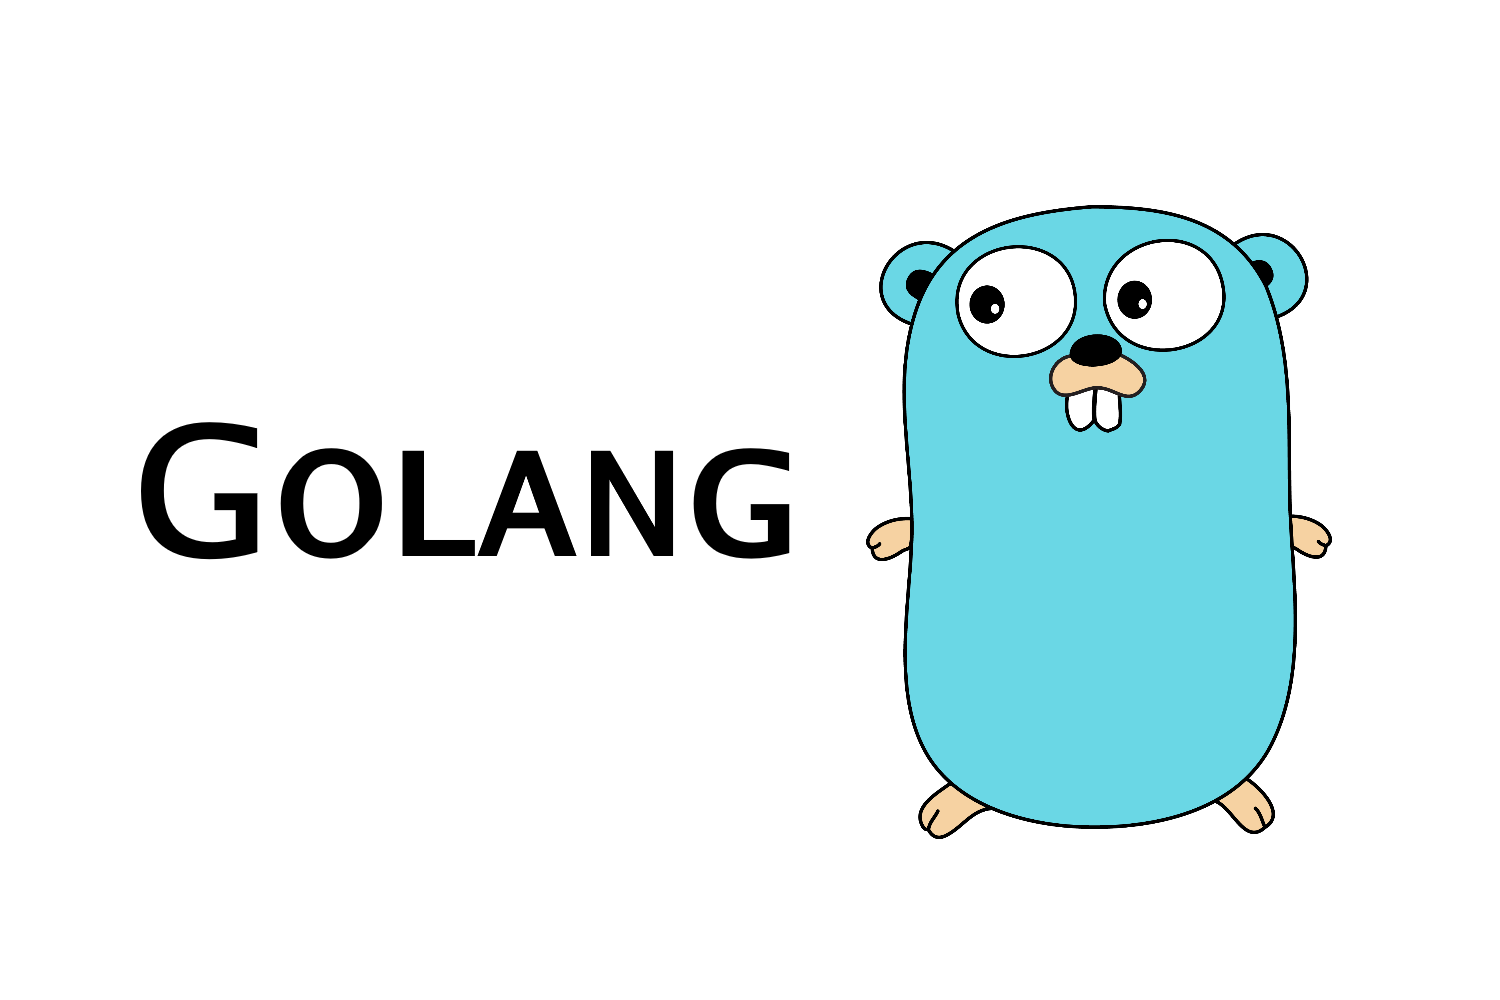 golang：Goland 2020最新激活码